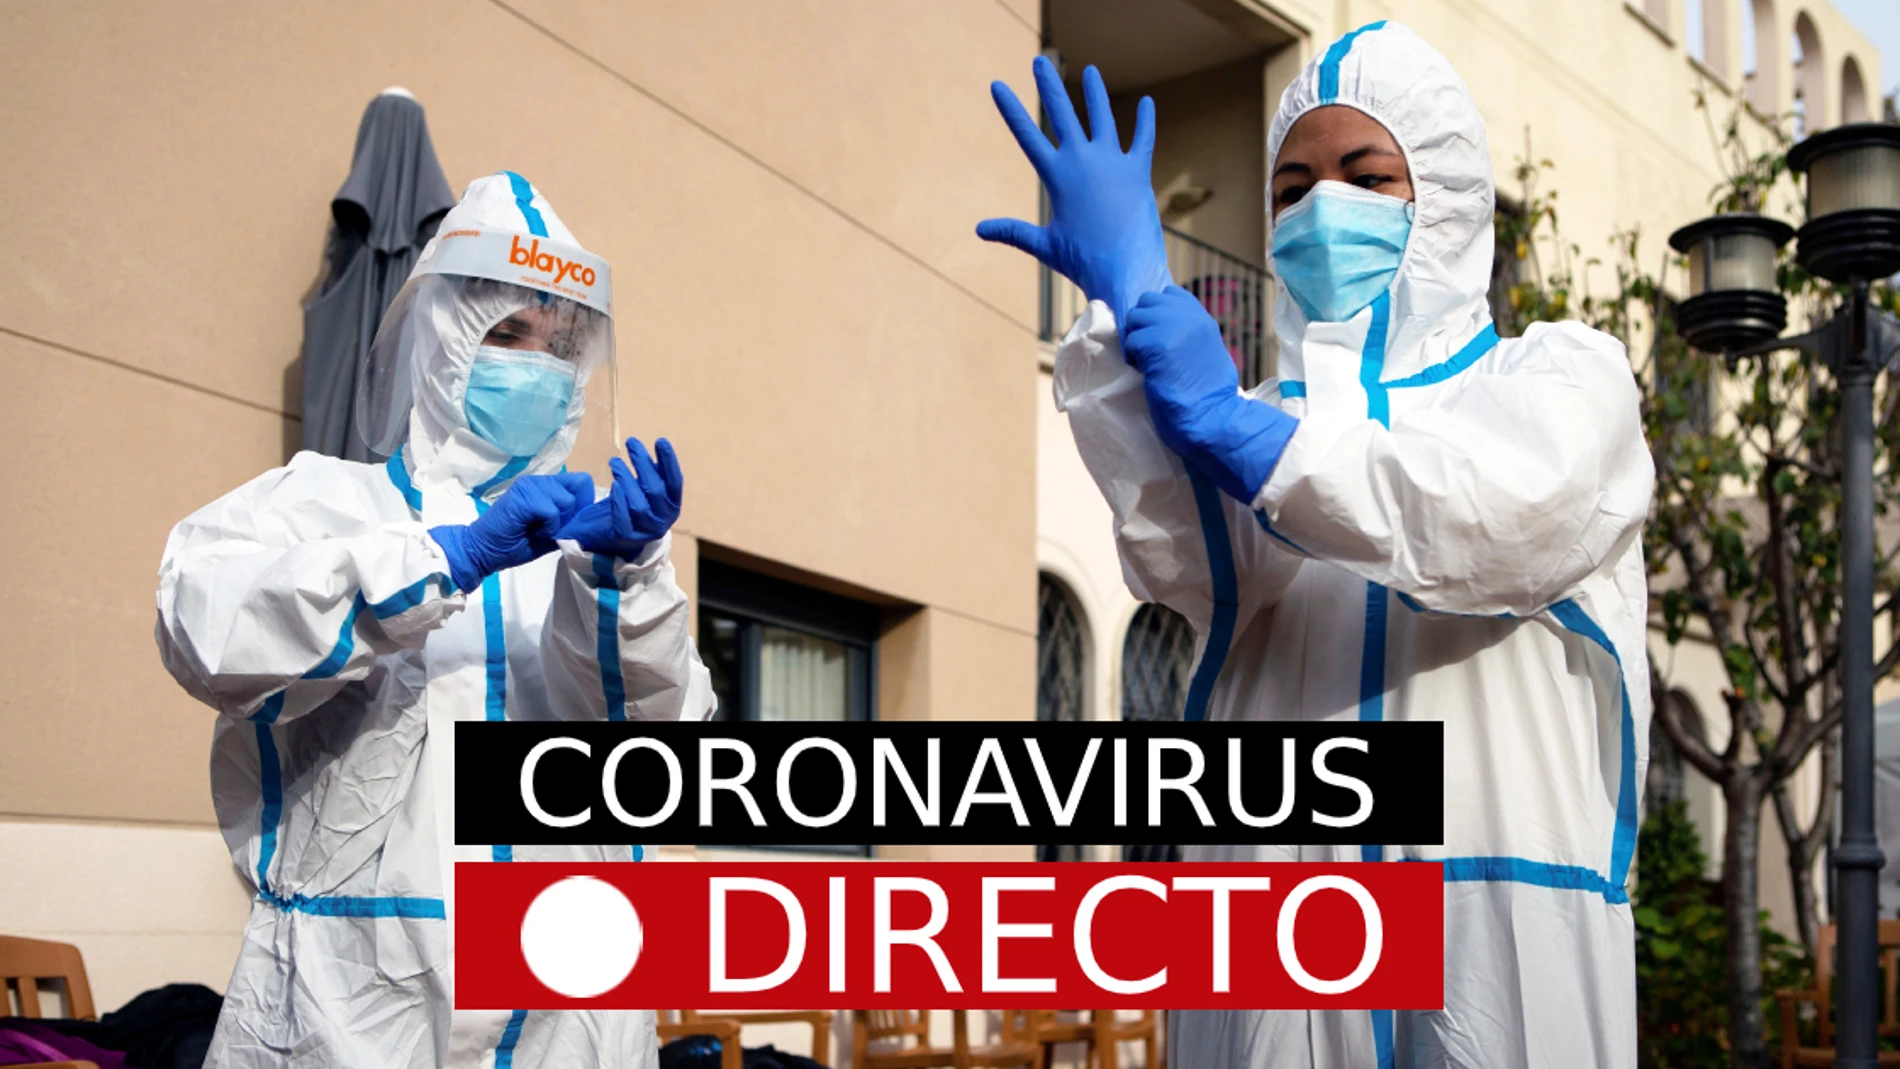 Coronavirus en España: Noticias de última hora de los confinamientos, test y vacunas, en directo